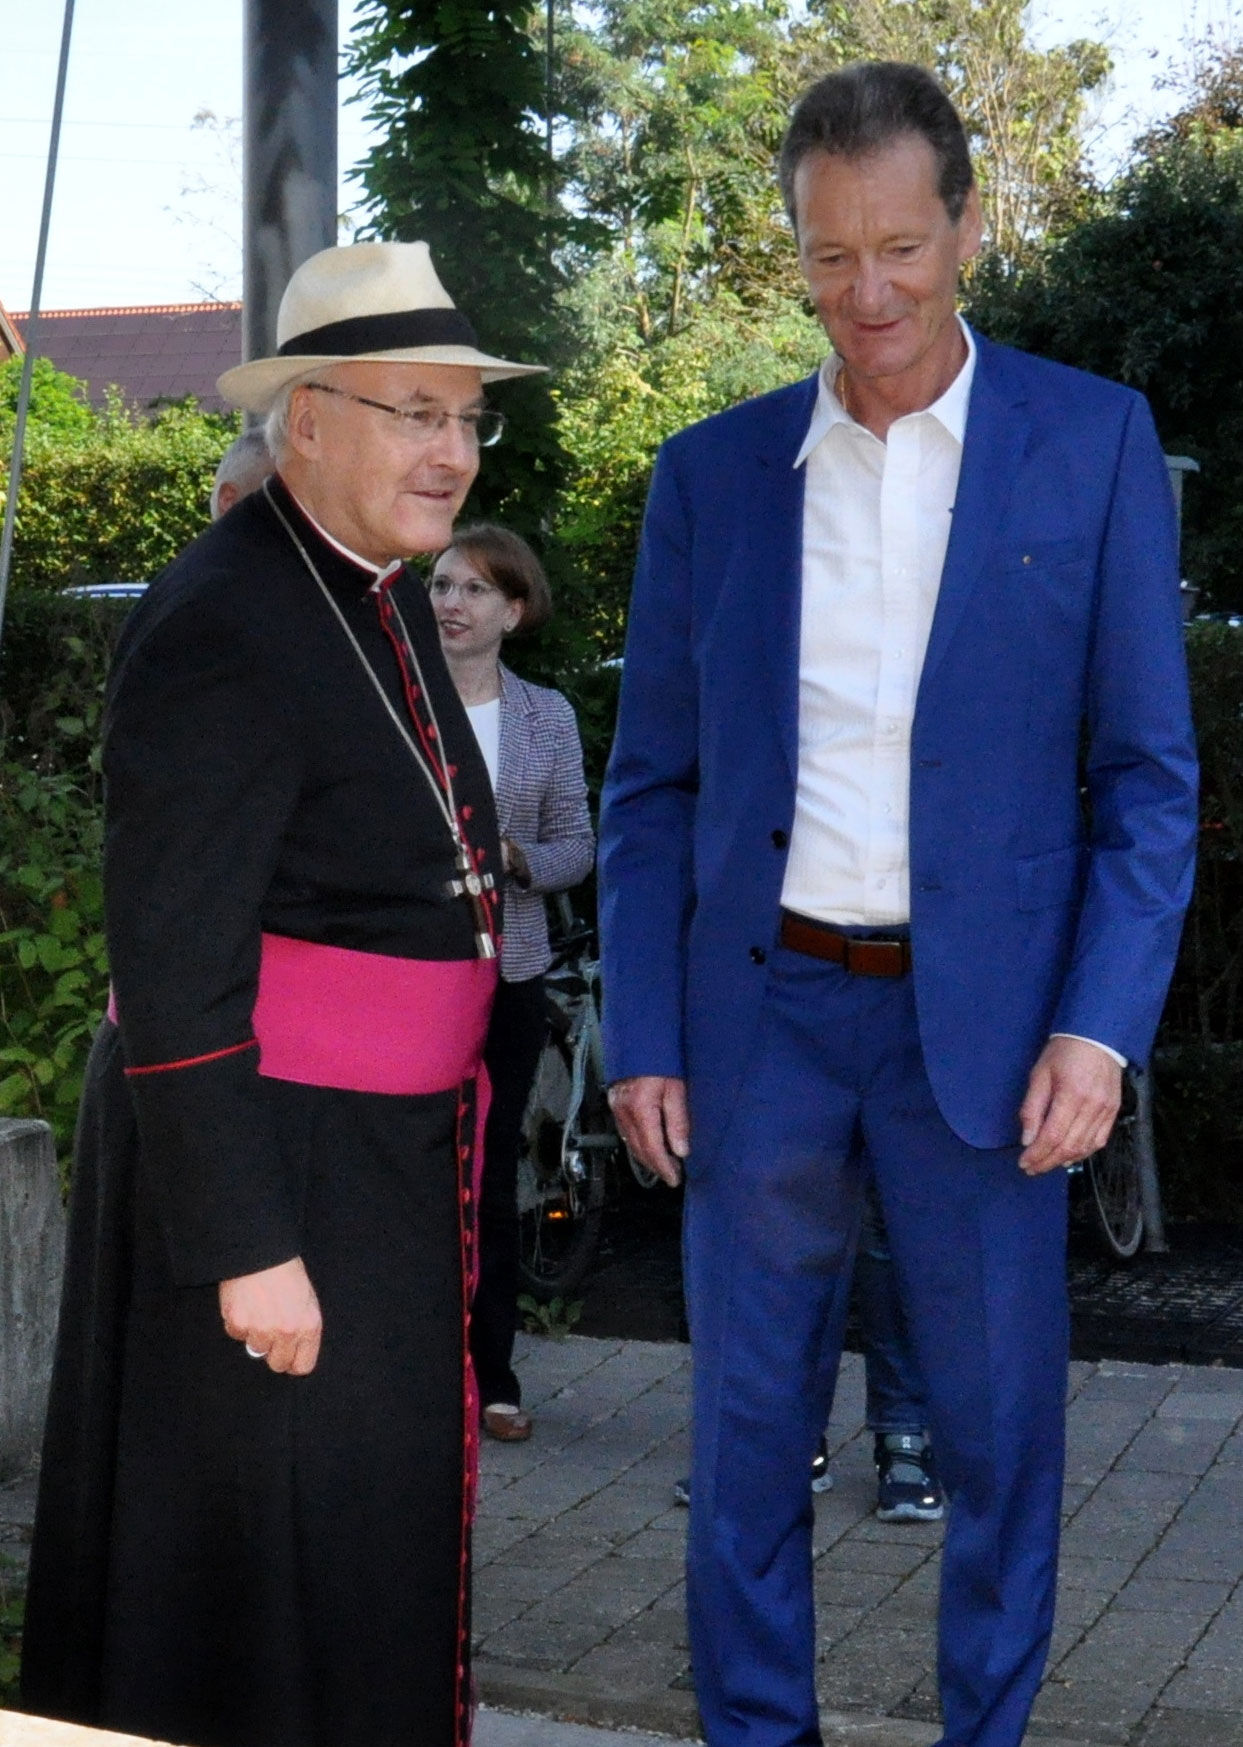 Firmenchef Michael Gammel empfing Bischof Rudolf an seinem Betriebssitz mit 45 Mitarbeitern in Abensberg